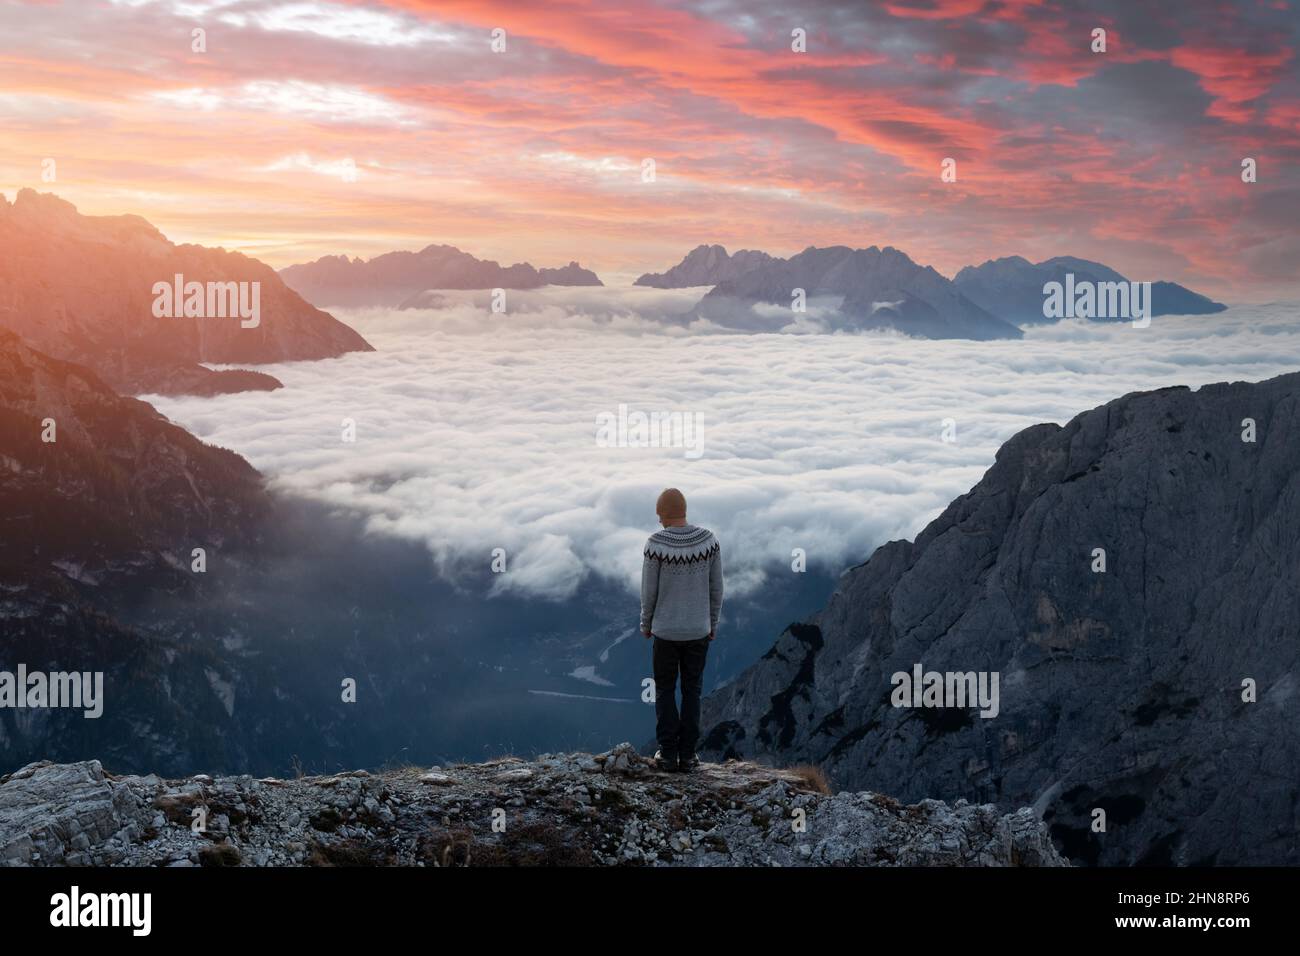 Séjour touristique au-dessus du brouillard au bord d'une falaise dans les Dolomites. Emplacement Auronzo rifugio dans le parc national de Tre Cime di Lavaredo, Dolomites, Trentin-Haut-Adige, Italie Banque D'Images